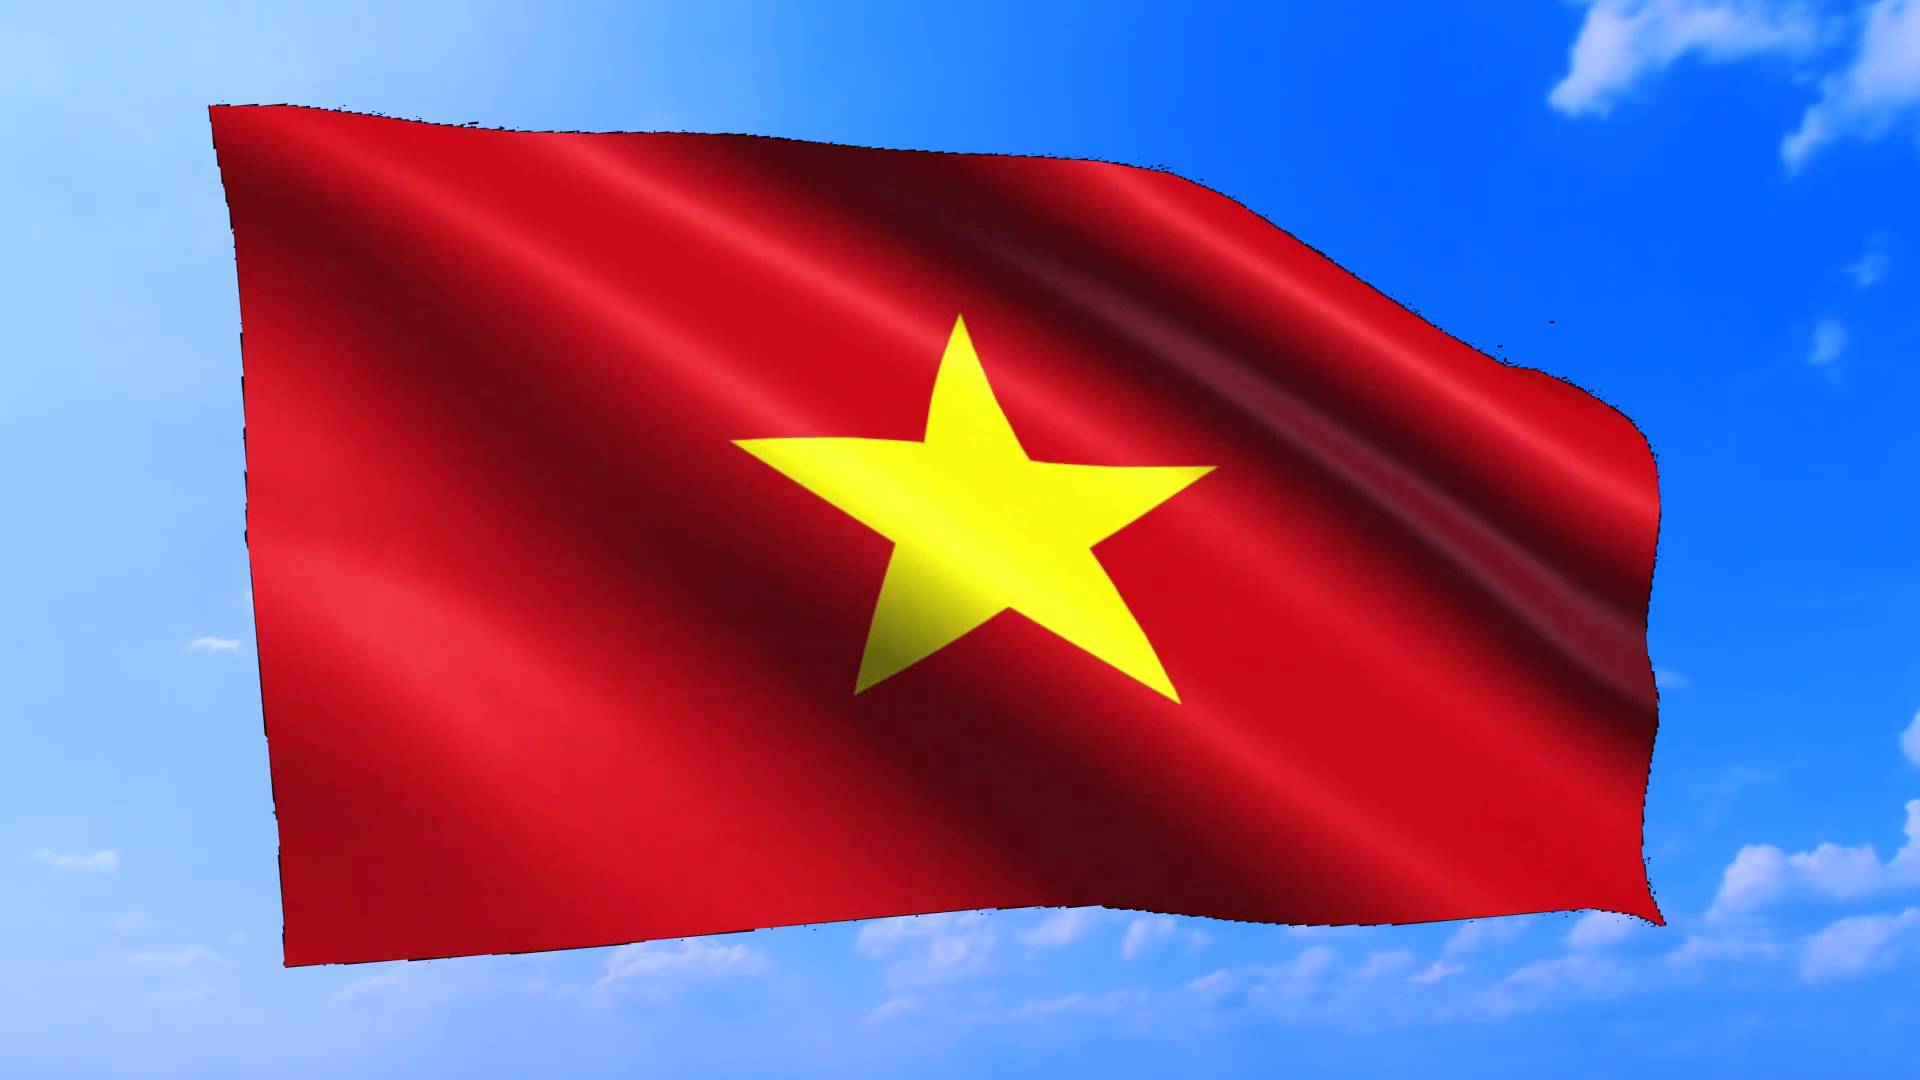 Cờ đỏ sao vàng là biểu tượng của quốc gia ta - Việt Nam. Hình ảnh này thể hiện truyền thống, bản sắc dân tộc và sự kiêu hãnh, tự hào của chúng ta. Hãy cùng chiêm ngưỡng hình ảnh cờ đỏ sao vàng để thấy được tinh thần đoàn kết, sức mạnh của đất nước mình.